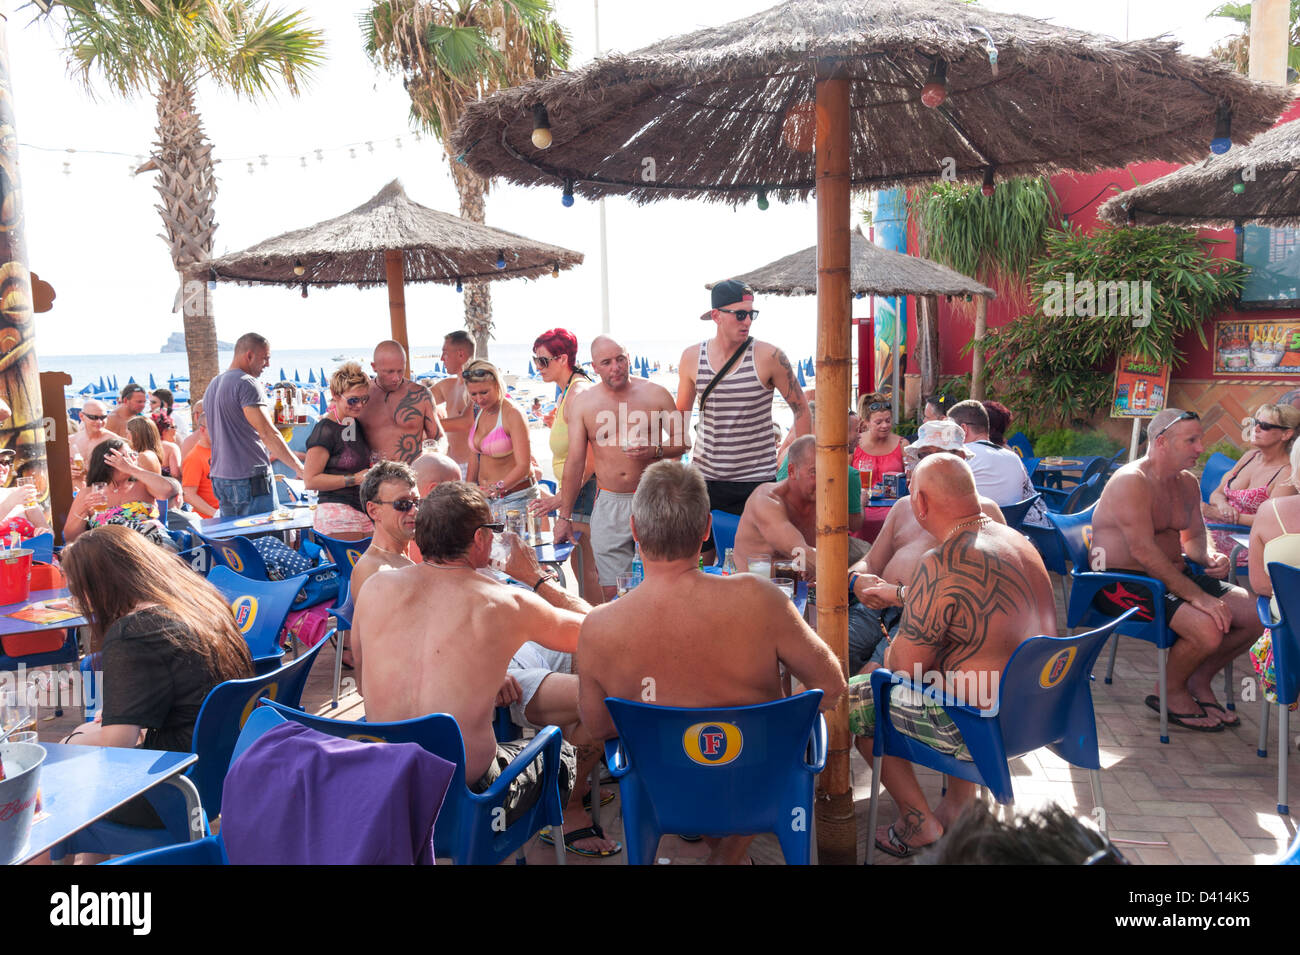 Les hommes britanniques boivent au bar au bord de l'eau, Benidorm, Costa Blanca, Espagne Banque D'Images